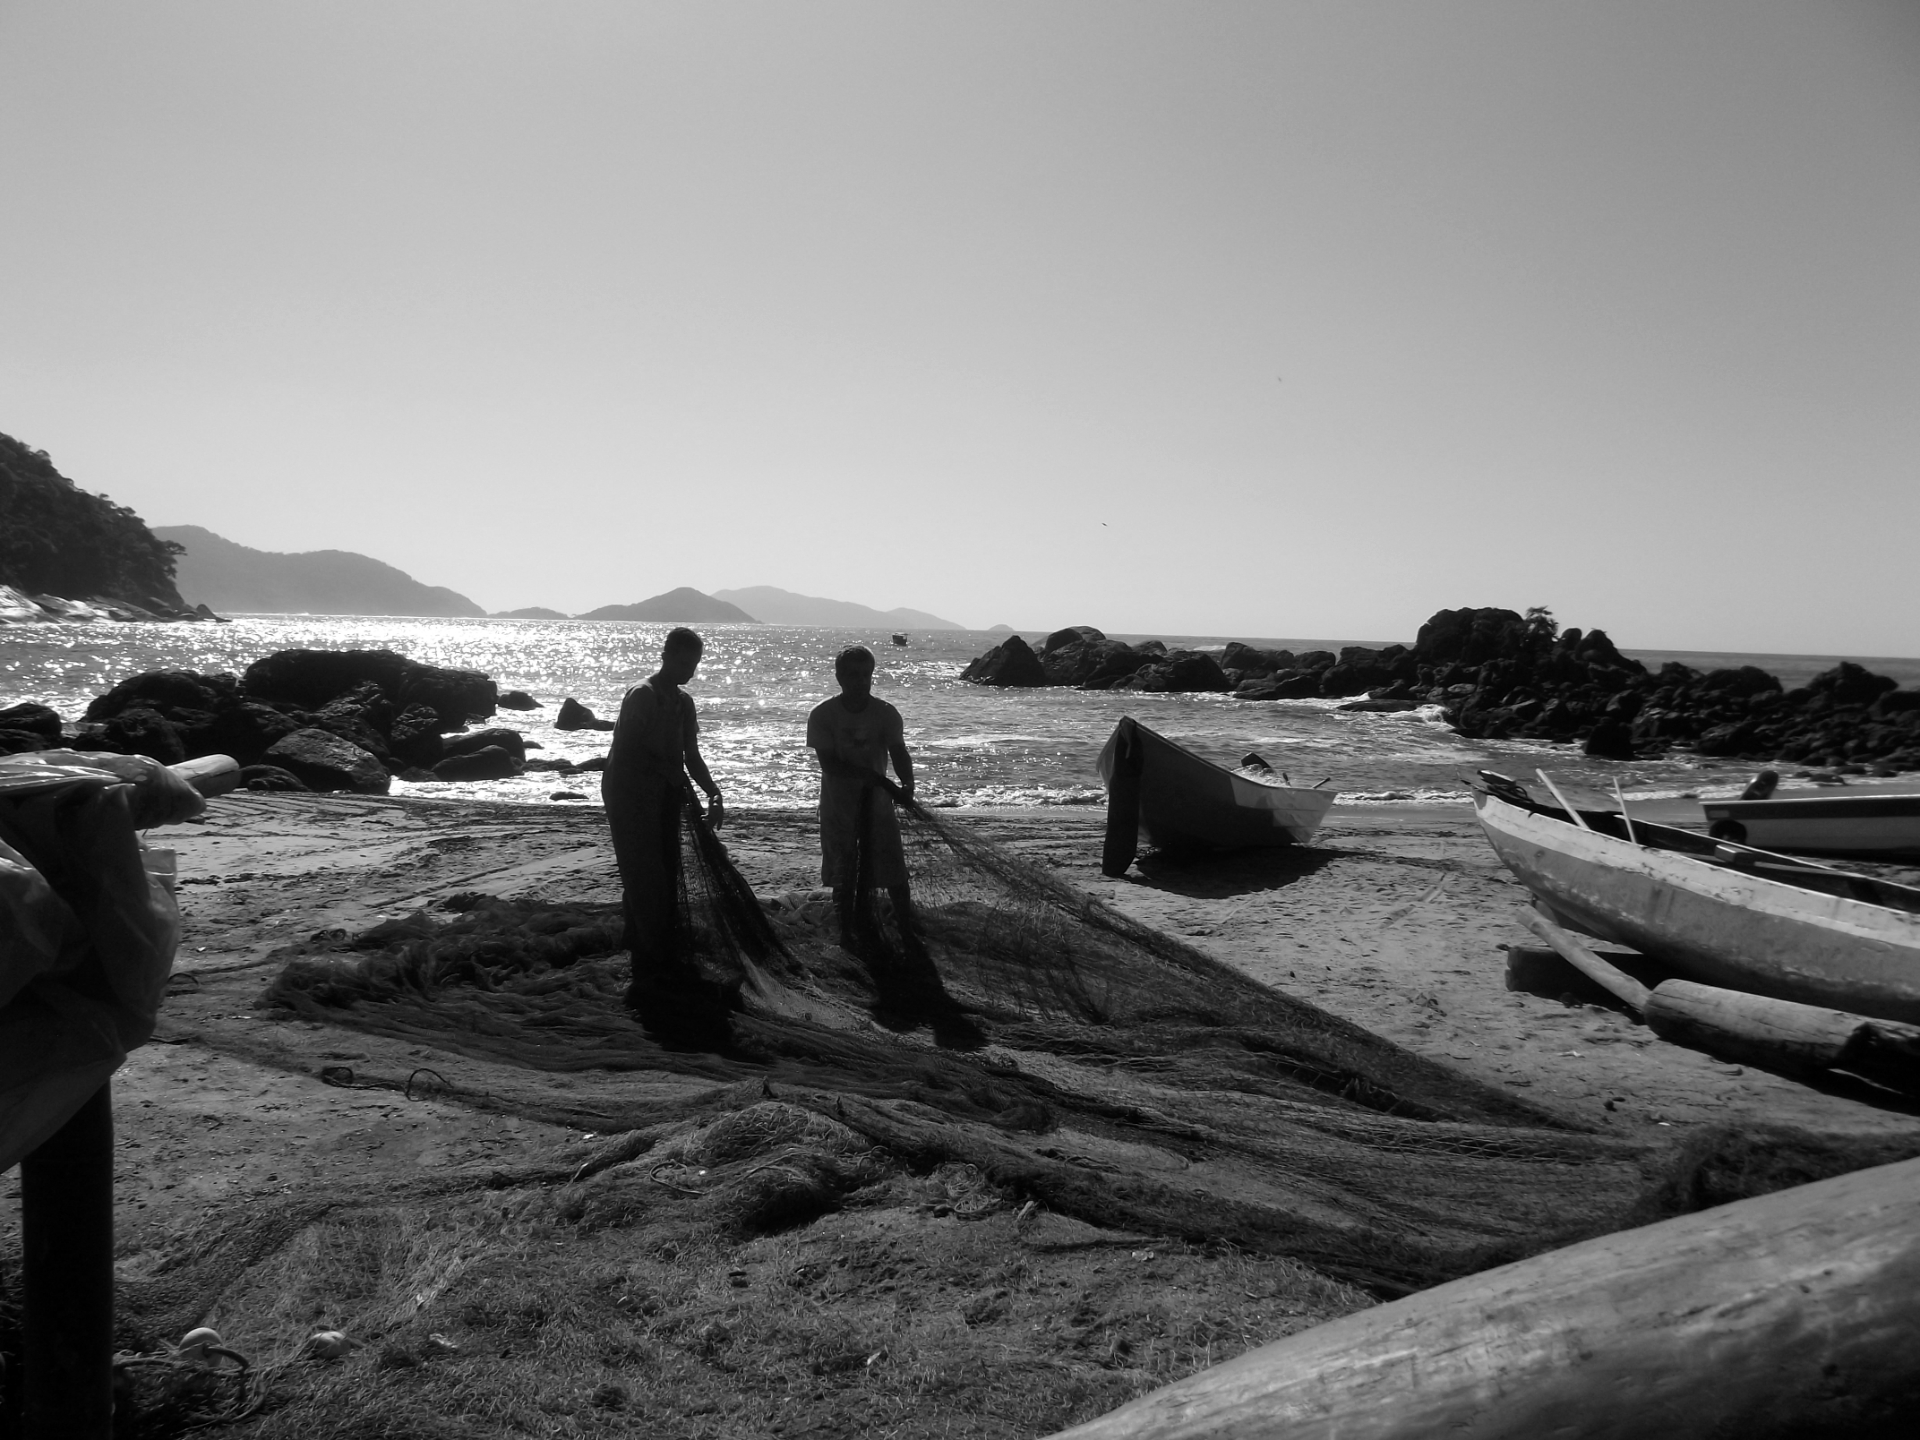 Foto em preto e branco. No centro da imagem dois homens estão puxando e esticando uma grande rede de pesca sobre a areia da praia. Atrás deles há uma canoa e dois barcos. Ao fundo o mar está com ondas leves, com sol forte e o céu sem nuvens. 